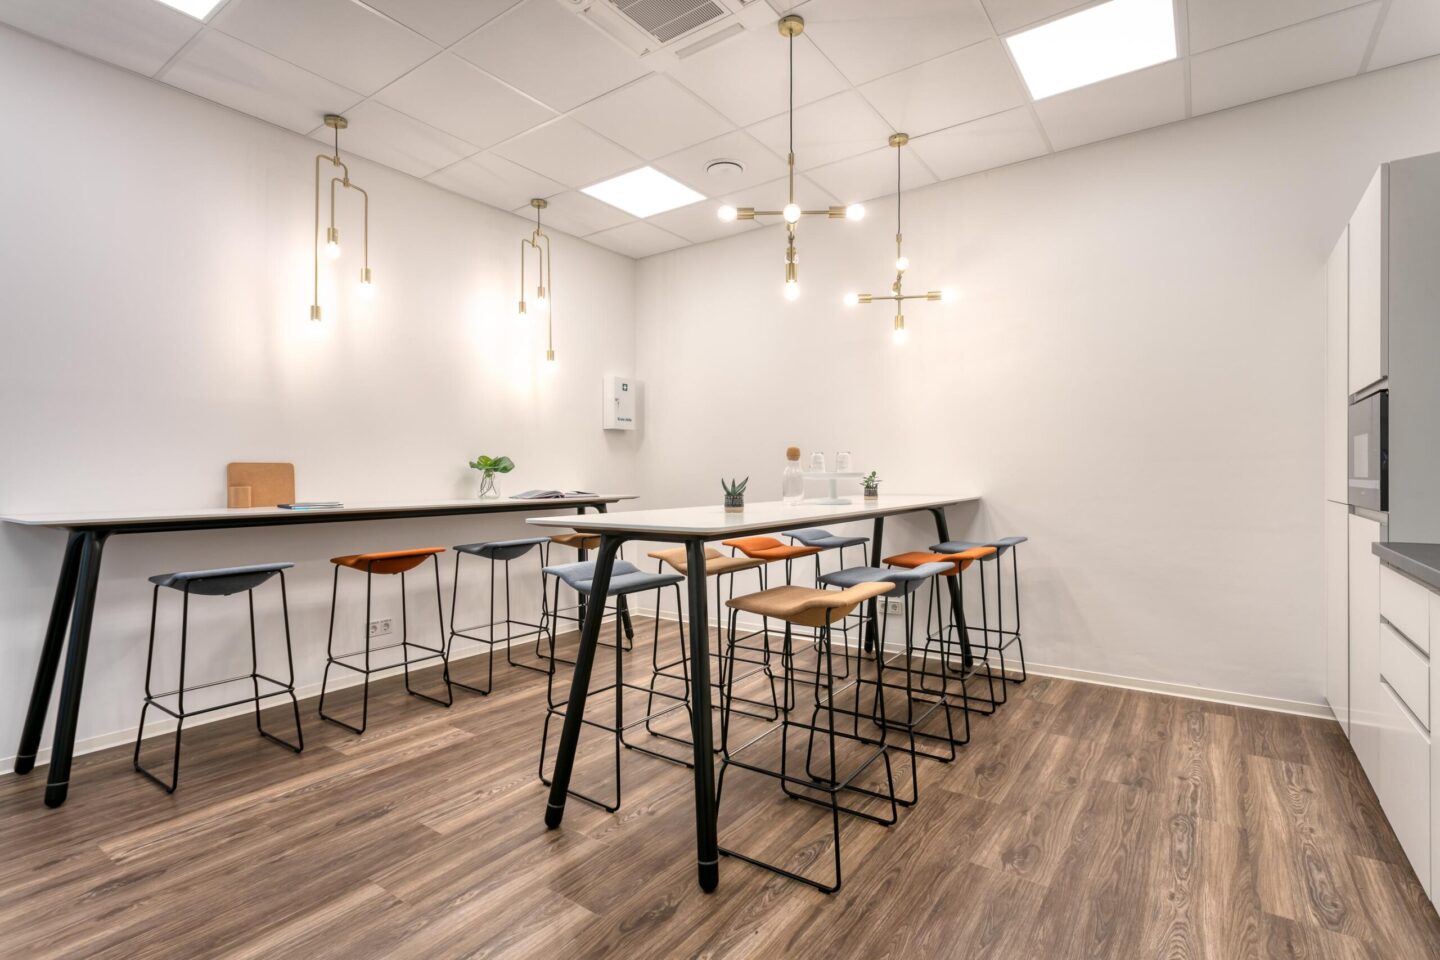 Alcon Aschaffenburg │ Open-plan tea kitchens │ Modern office furniture